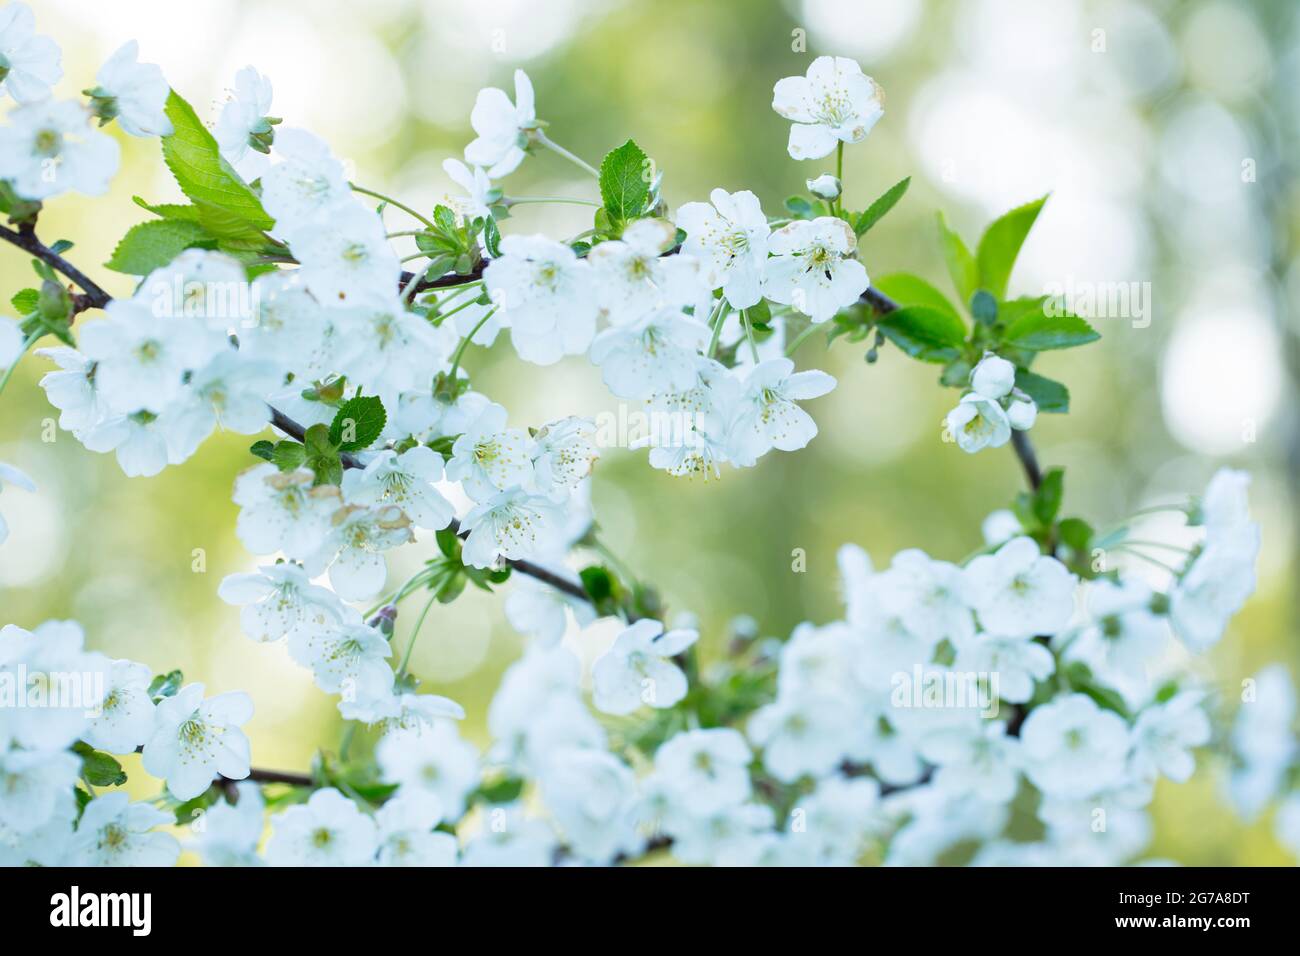 Branches de cerisier avec fleurs blanches, fond naturel flou Banque D'Images